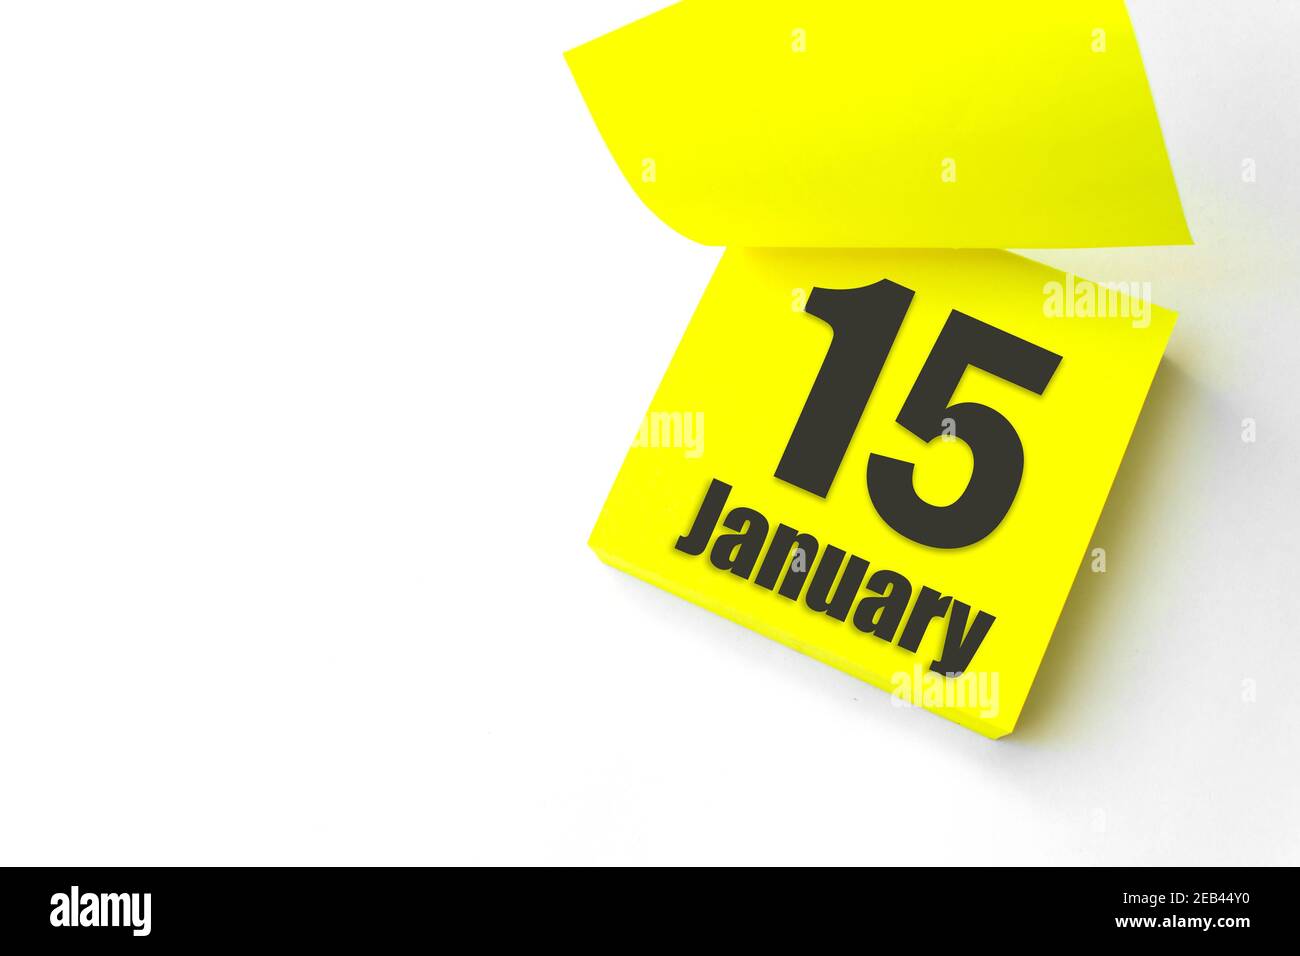 Januar 15th. Tag 15 des Monats, Kalenderdatum. Nahaufnahme leeres gelbes Papier Erinnerung Haftnotiz auf weißem Hintergrund. Winter Monat, Tag des Jahres Konz Stockfoto